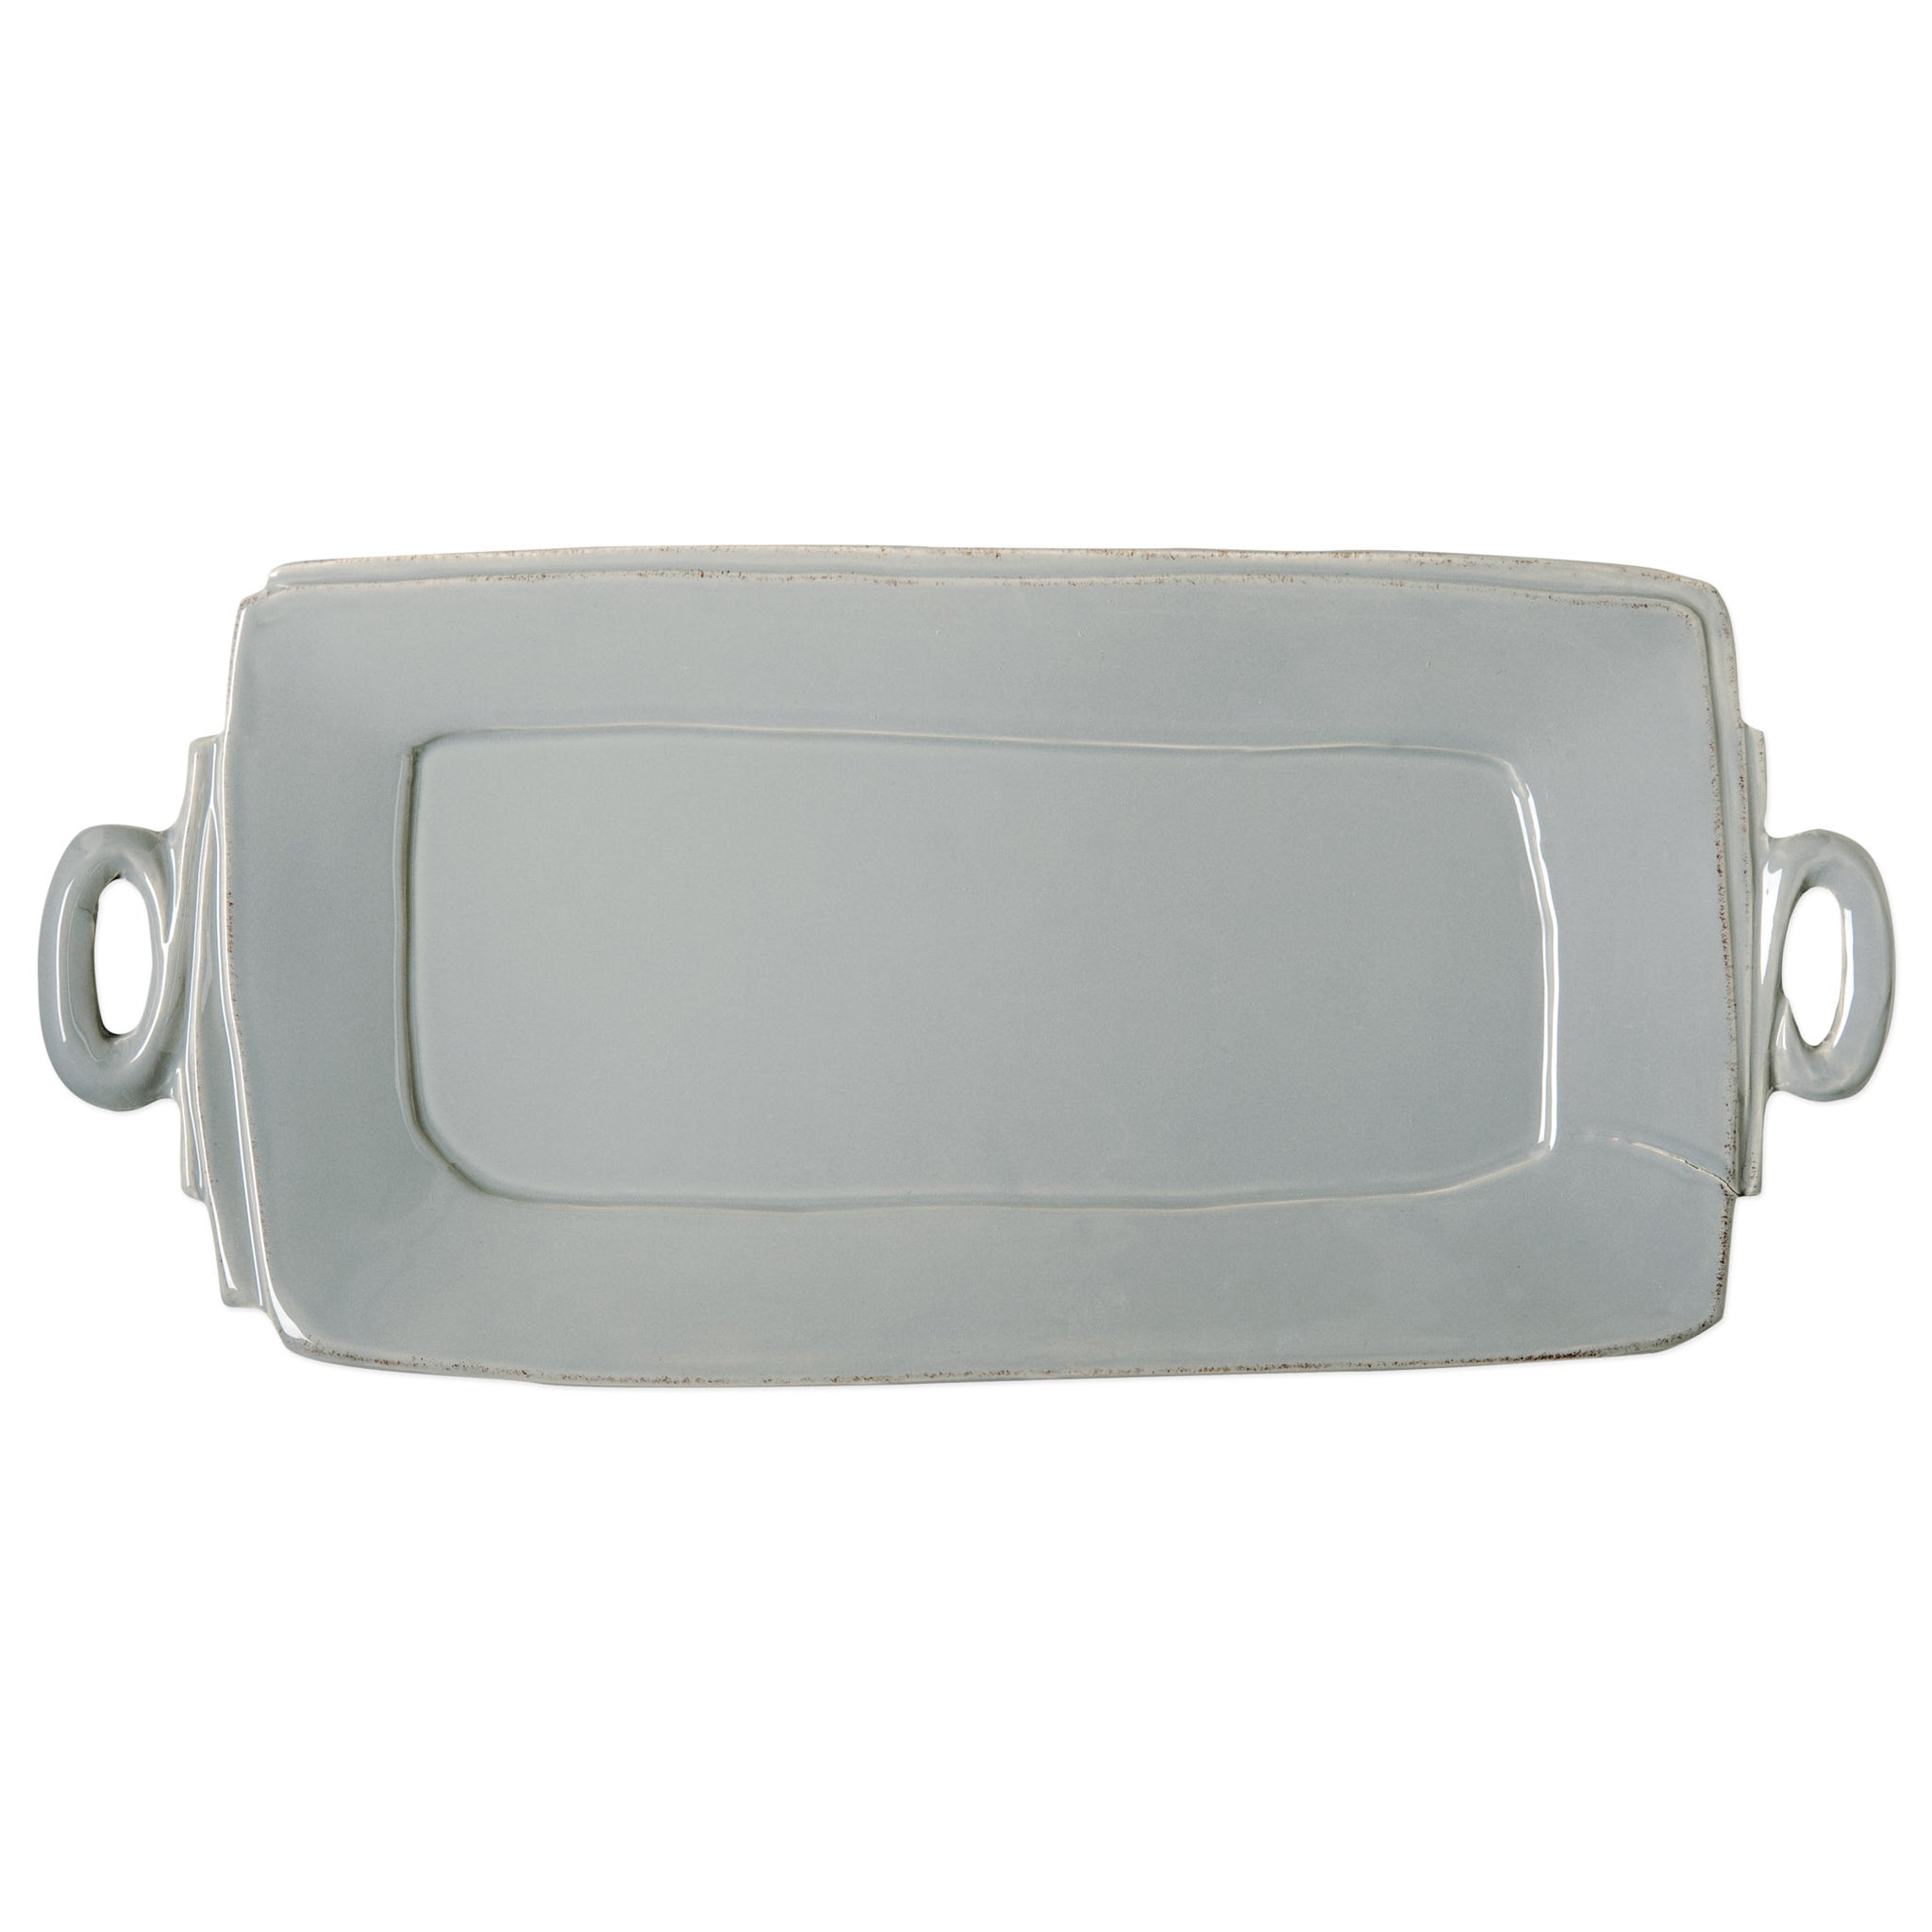 Lastra Handled Rectangular Platter - Gray